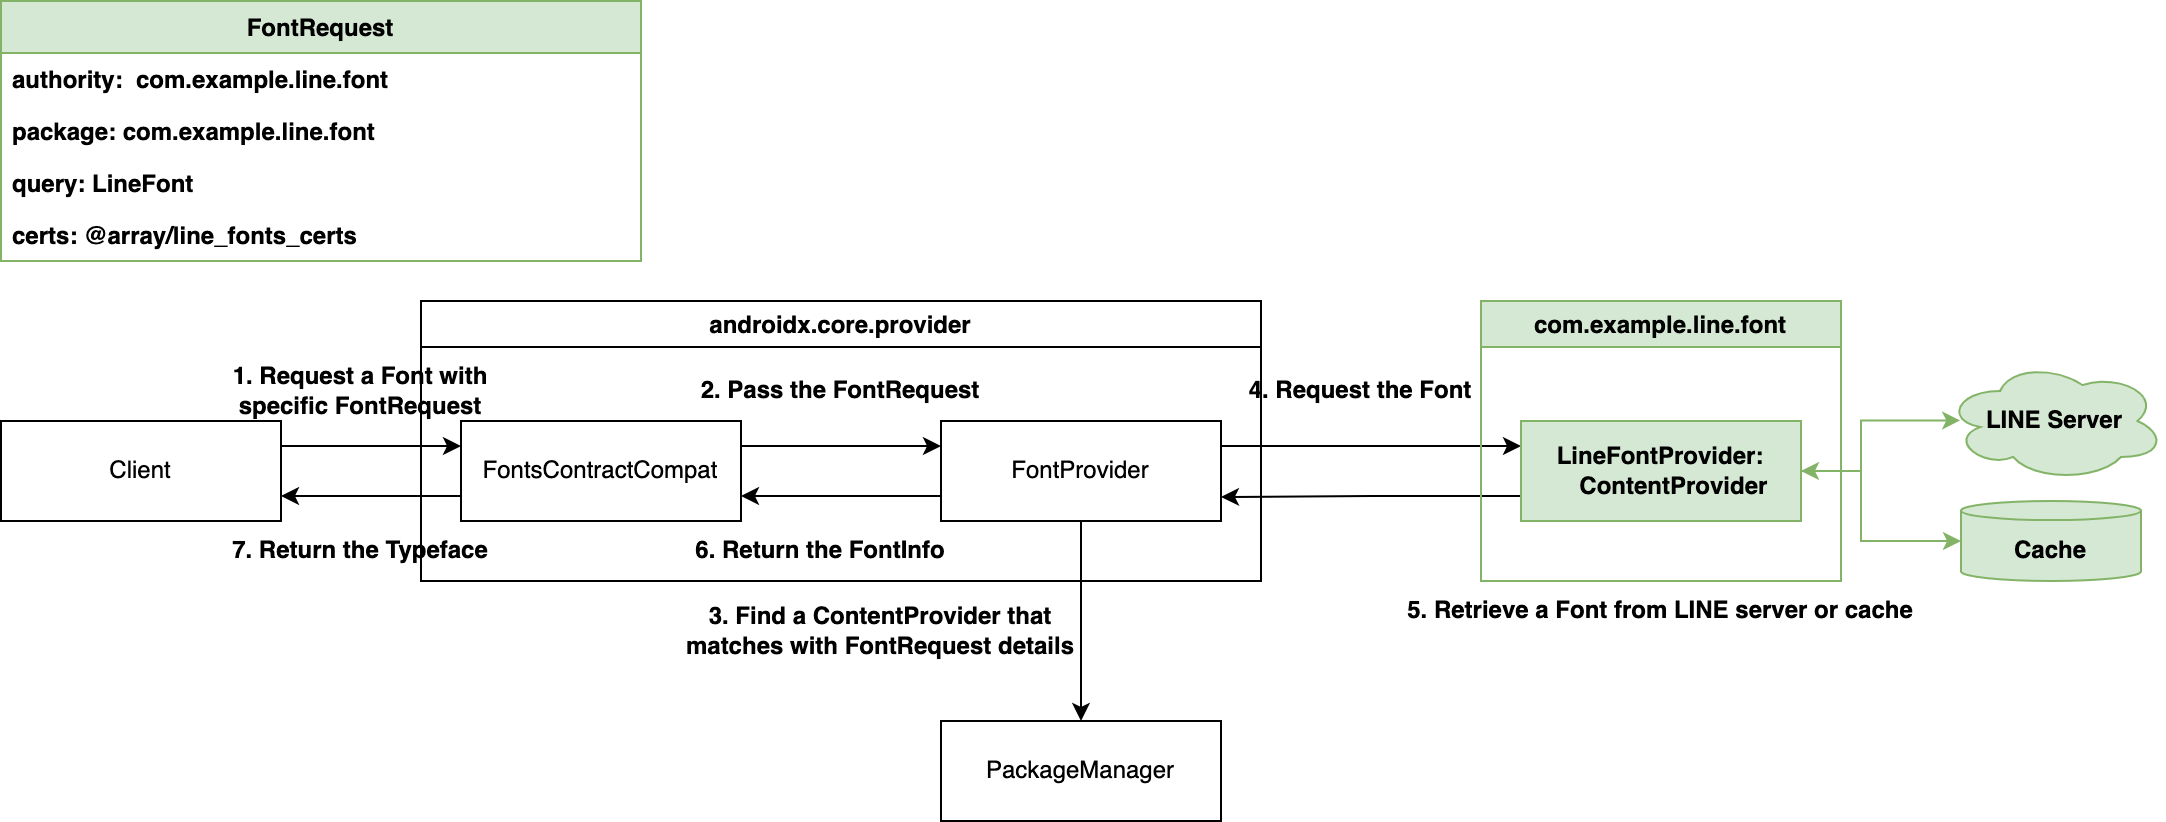 LINEサーバーからフォントを取得するContentProviderを構成し、そのContentProviderの仕様に合わせたFontRequestを渡す実装方法を紹介した図